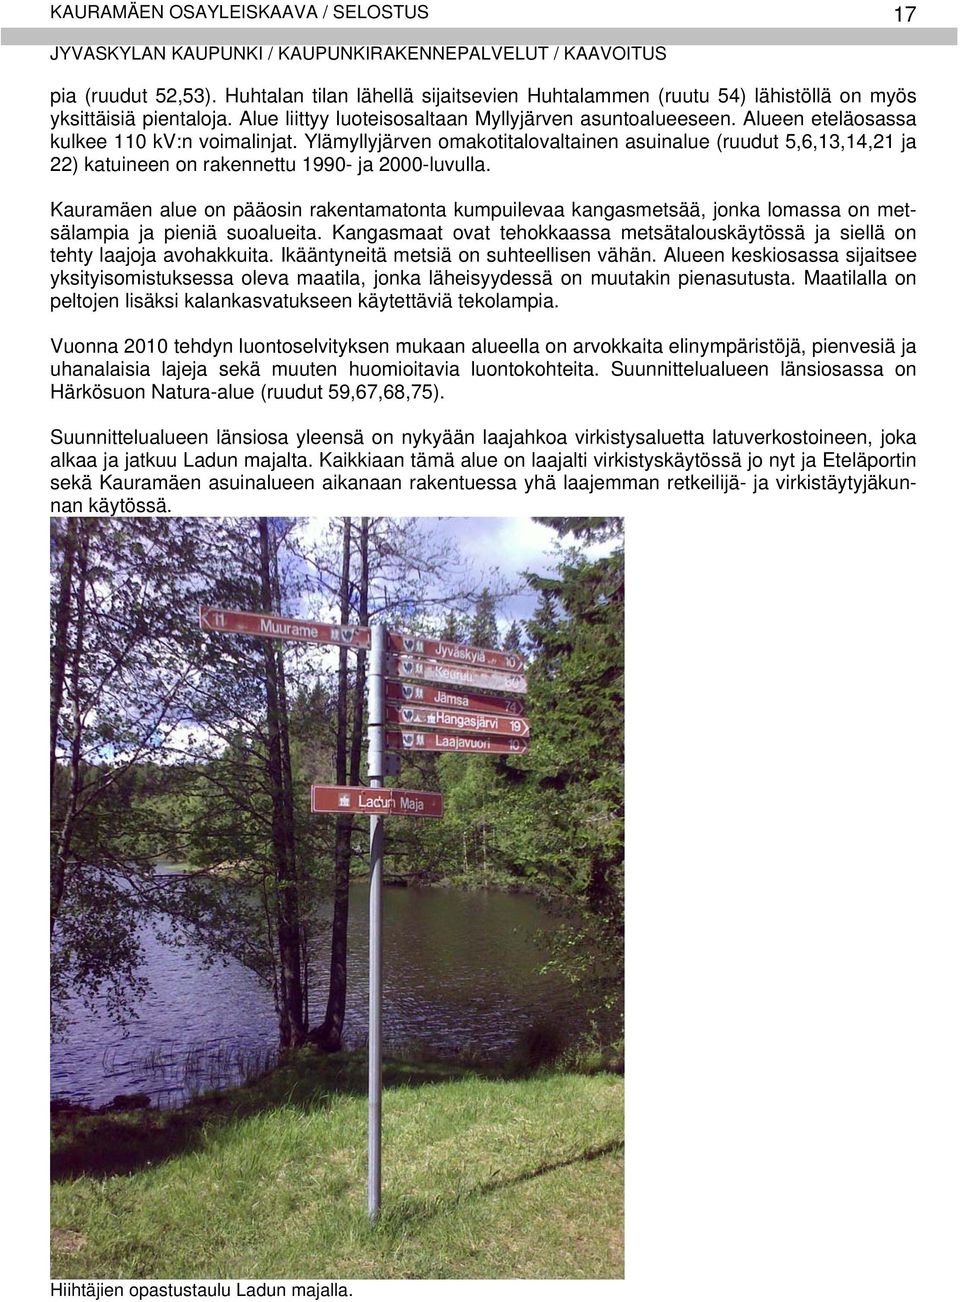 Ylämyllyjärven omakotitalovaltainen asuinalue (ruudut 5,6,13,14,21 ja 22) katuineen on rakennettu 1990- ja 2000-luvulla.